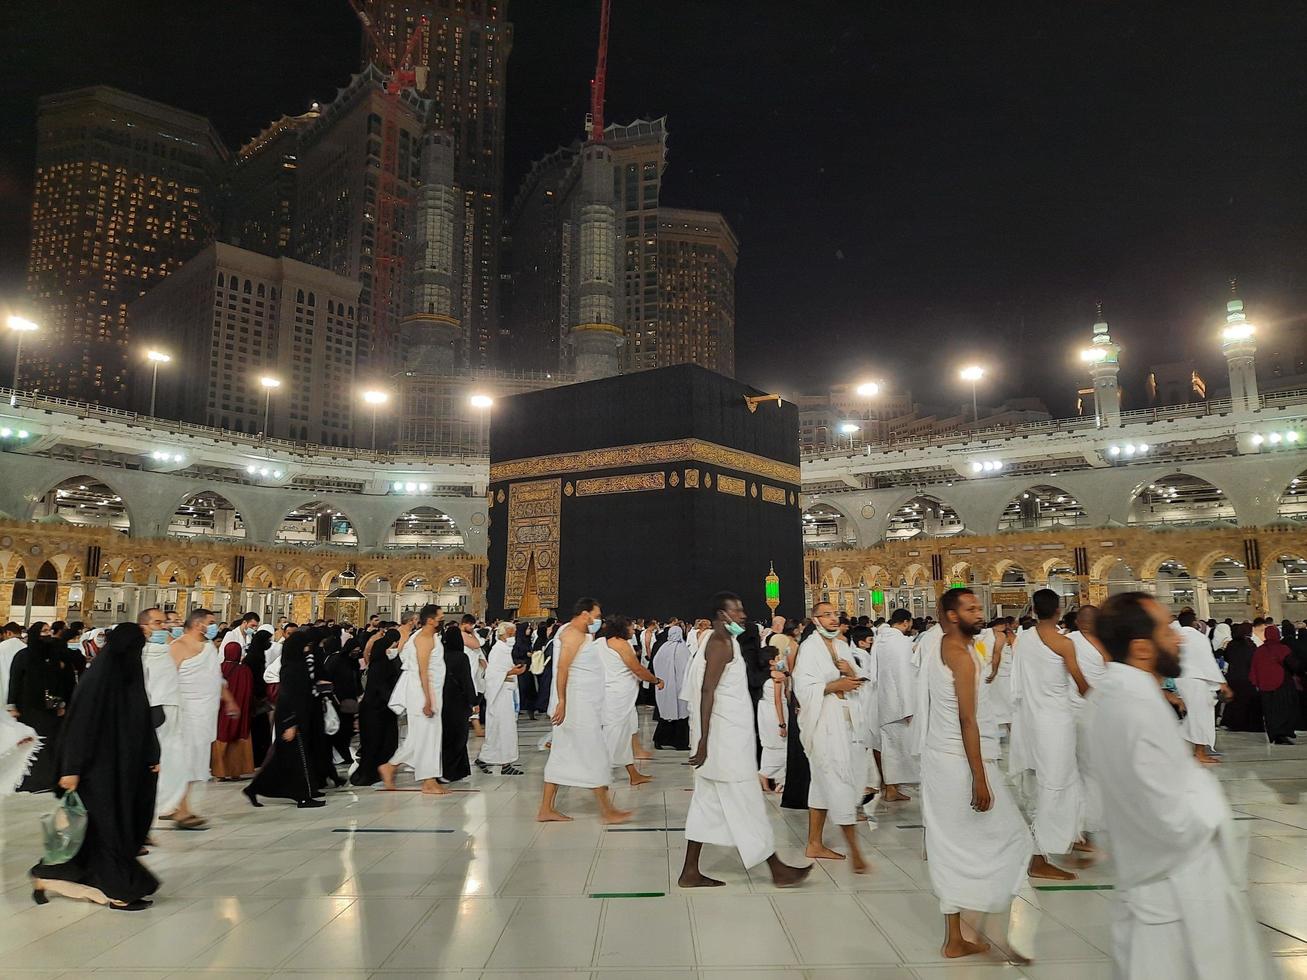 makkah, saoedi-arabië, april 2021 - tijdens de maand ramadan voeren pelgrims van over de hele wereld tawaf uit rond de kaaba in de moskee al-haram in mekka. foto